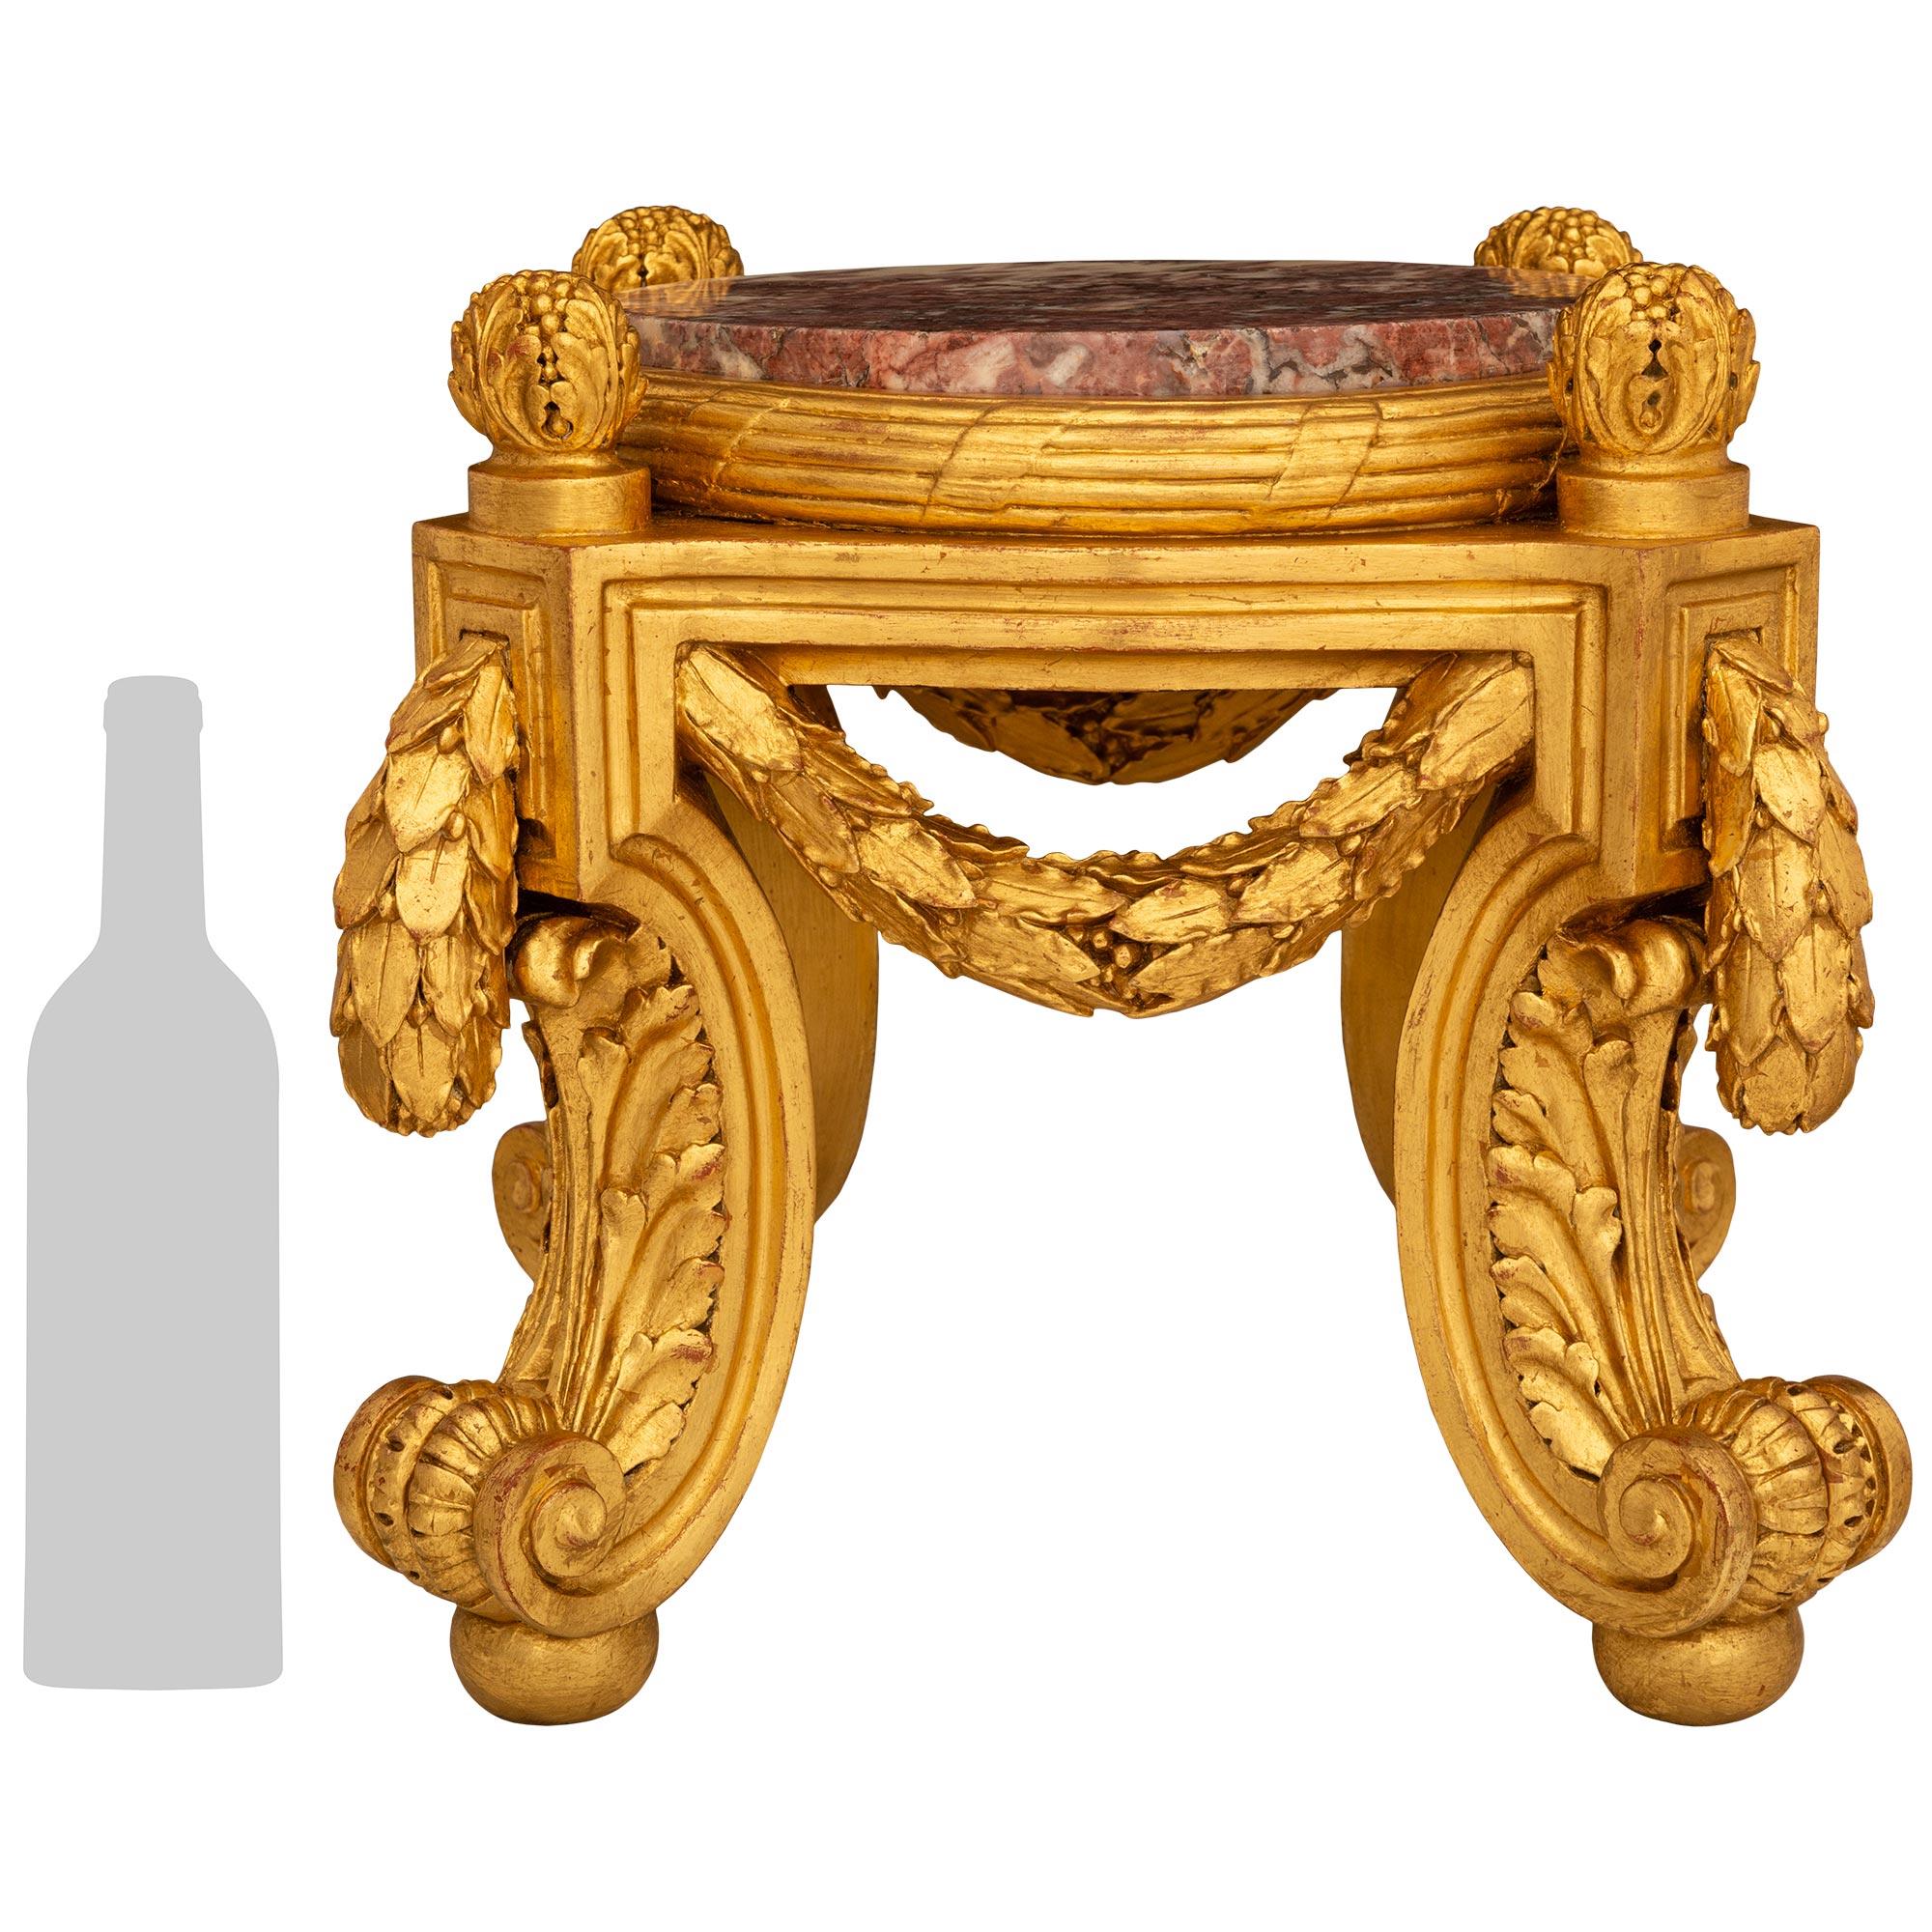 Un piédestal en bois doré et marbre Breccia Violette de grande qualité et très décoratif, de style Louis XVI, d'époque Belle Epoque, du 19ème siècle. Ce piédestal unique est surmonté de quatre pieds cabriole à volutes en 